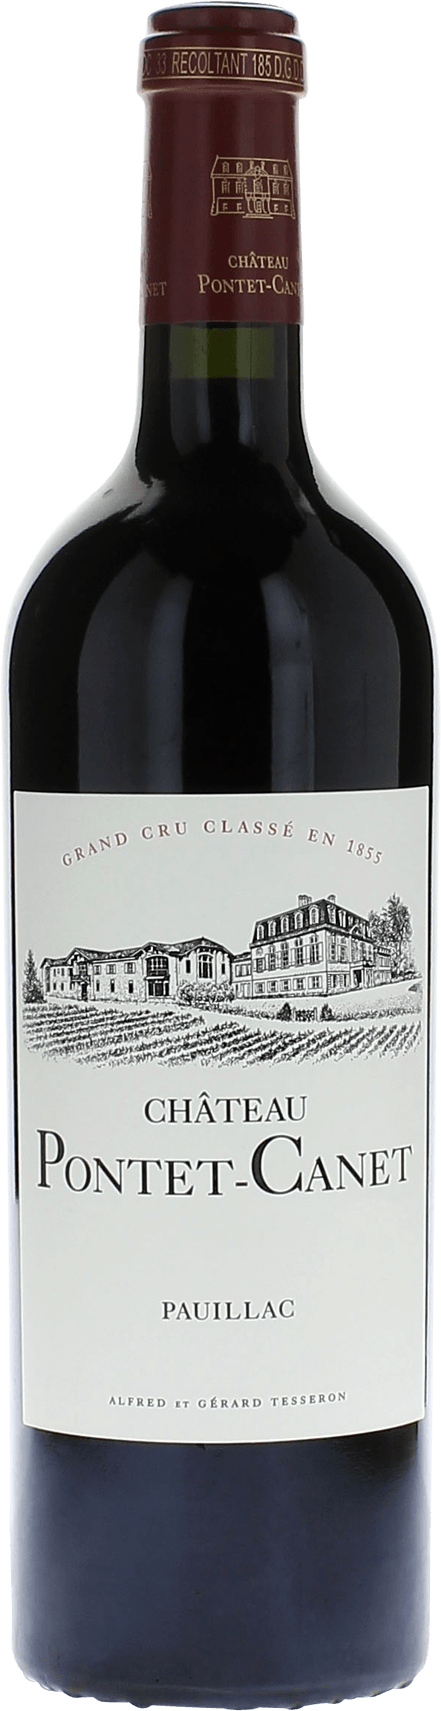 Pontet canet 1982 5me Grand cru class Pauillac, Bordeaux rouge